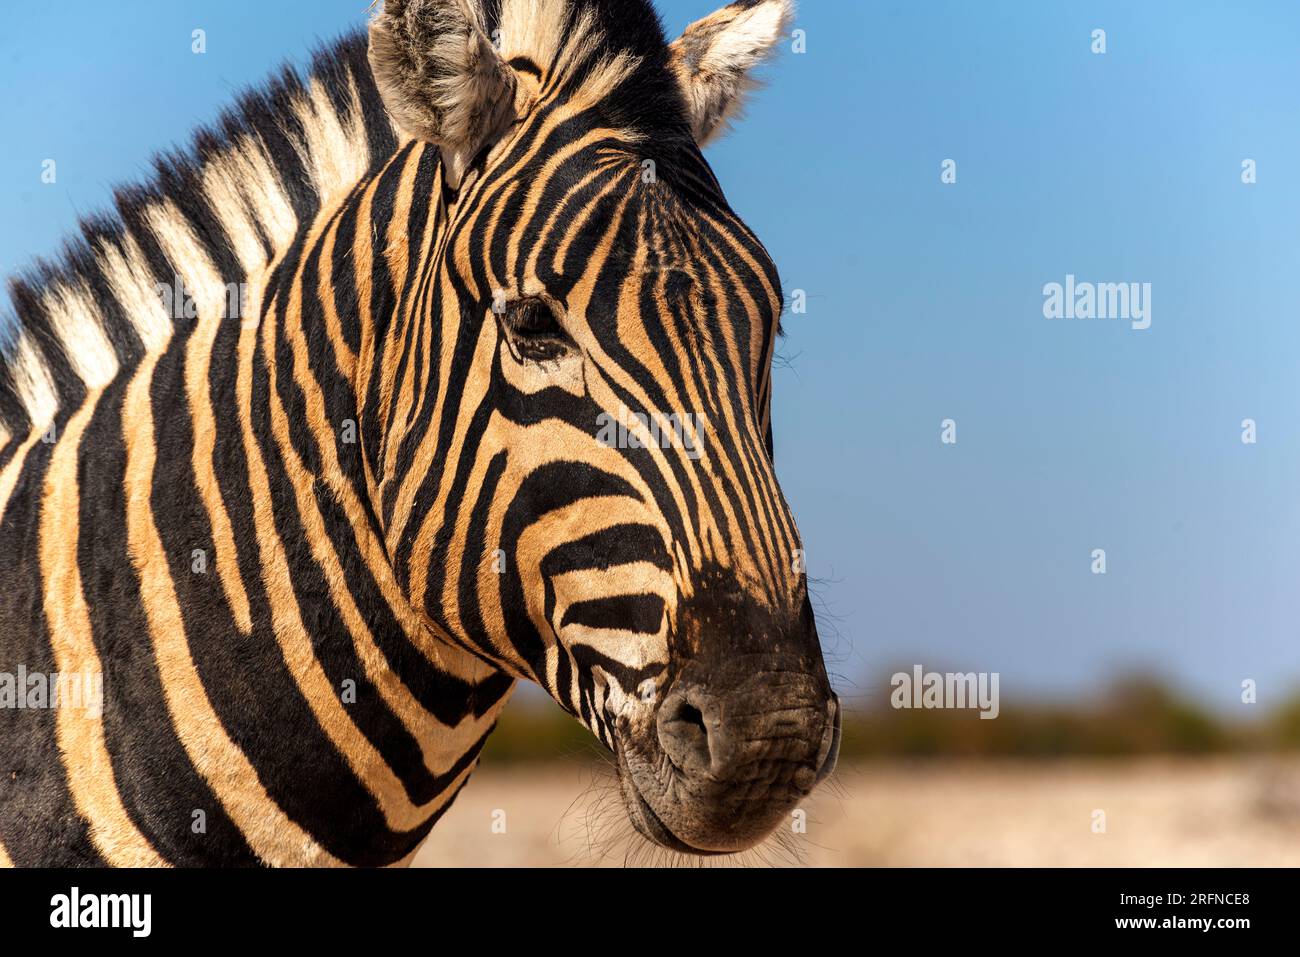 Zebra close up, Etosha National Park, Namibia Stock Photo